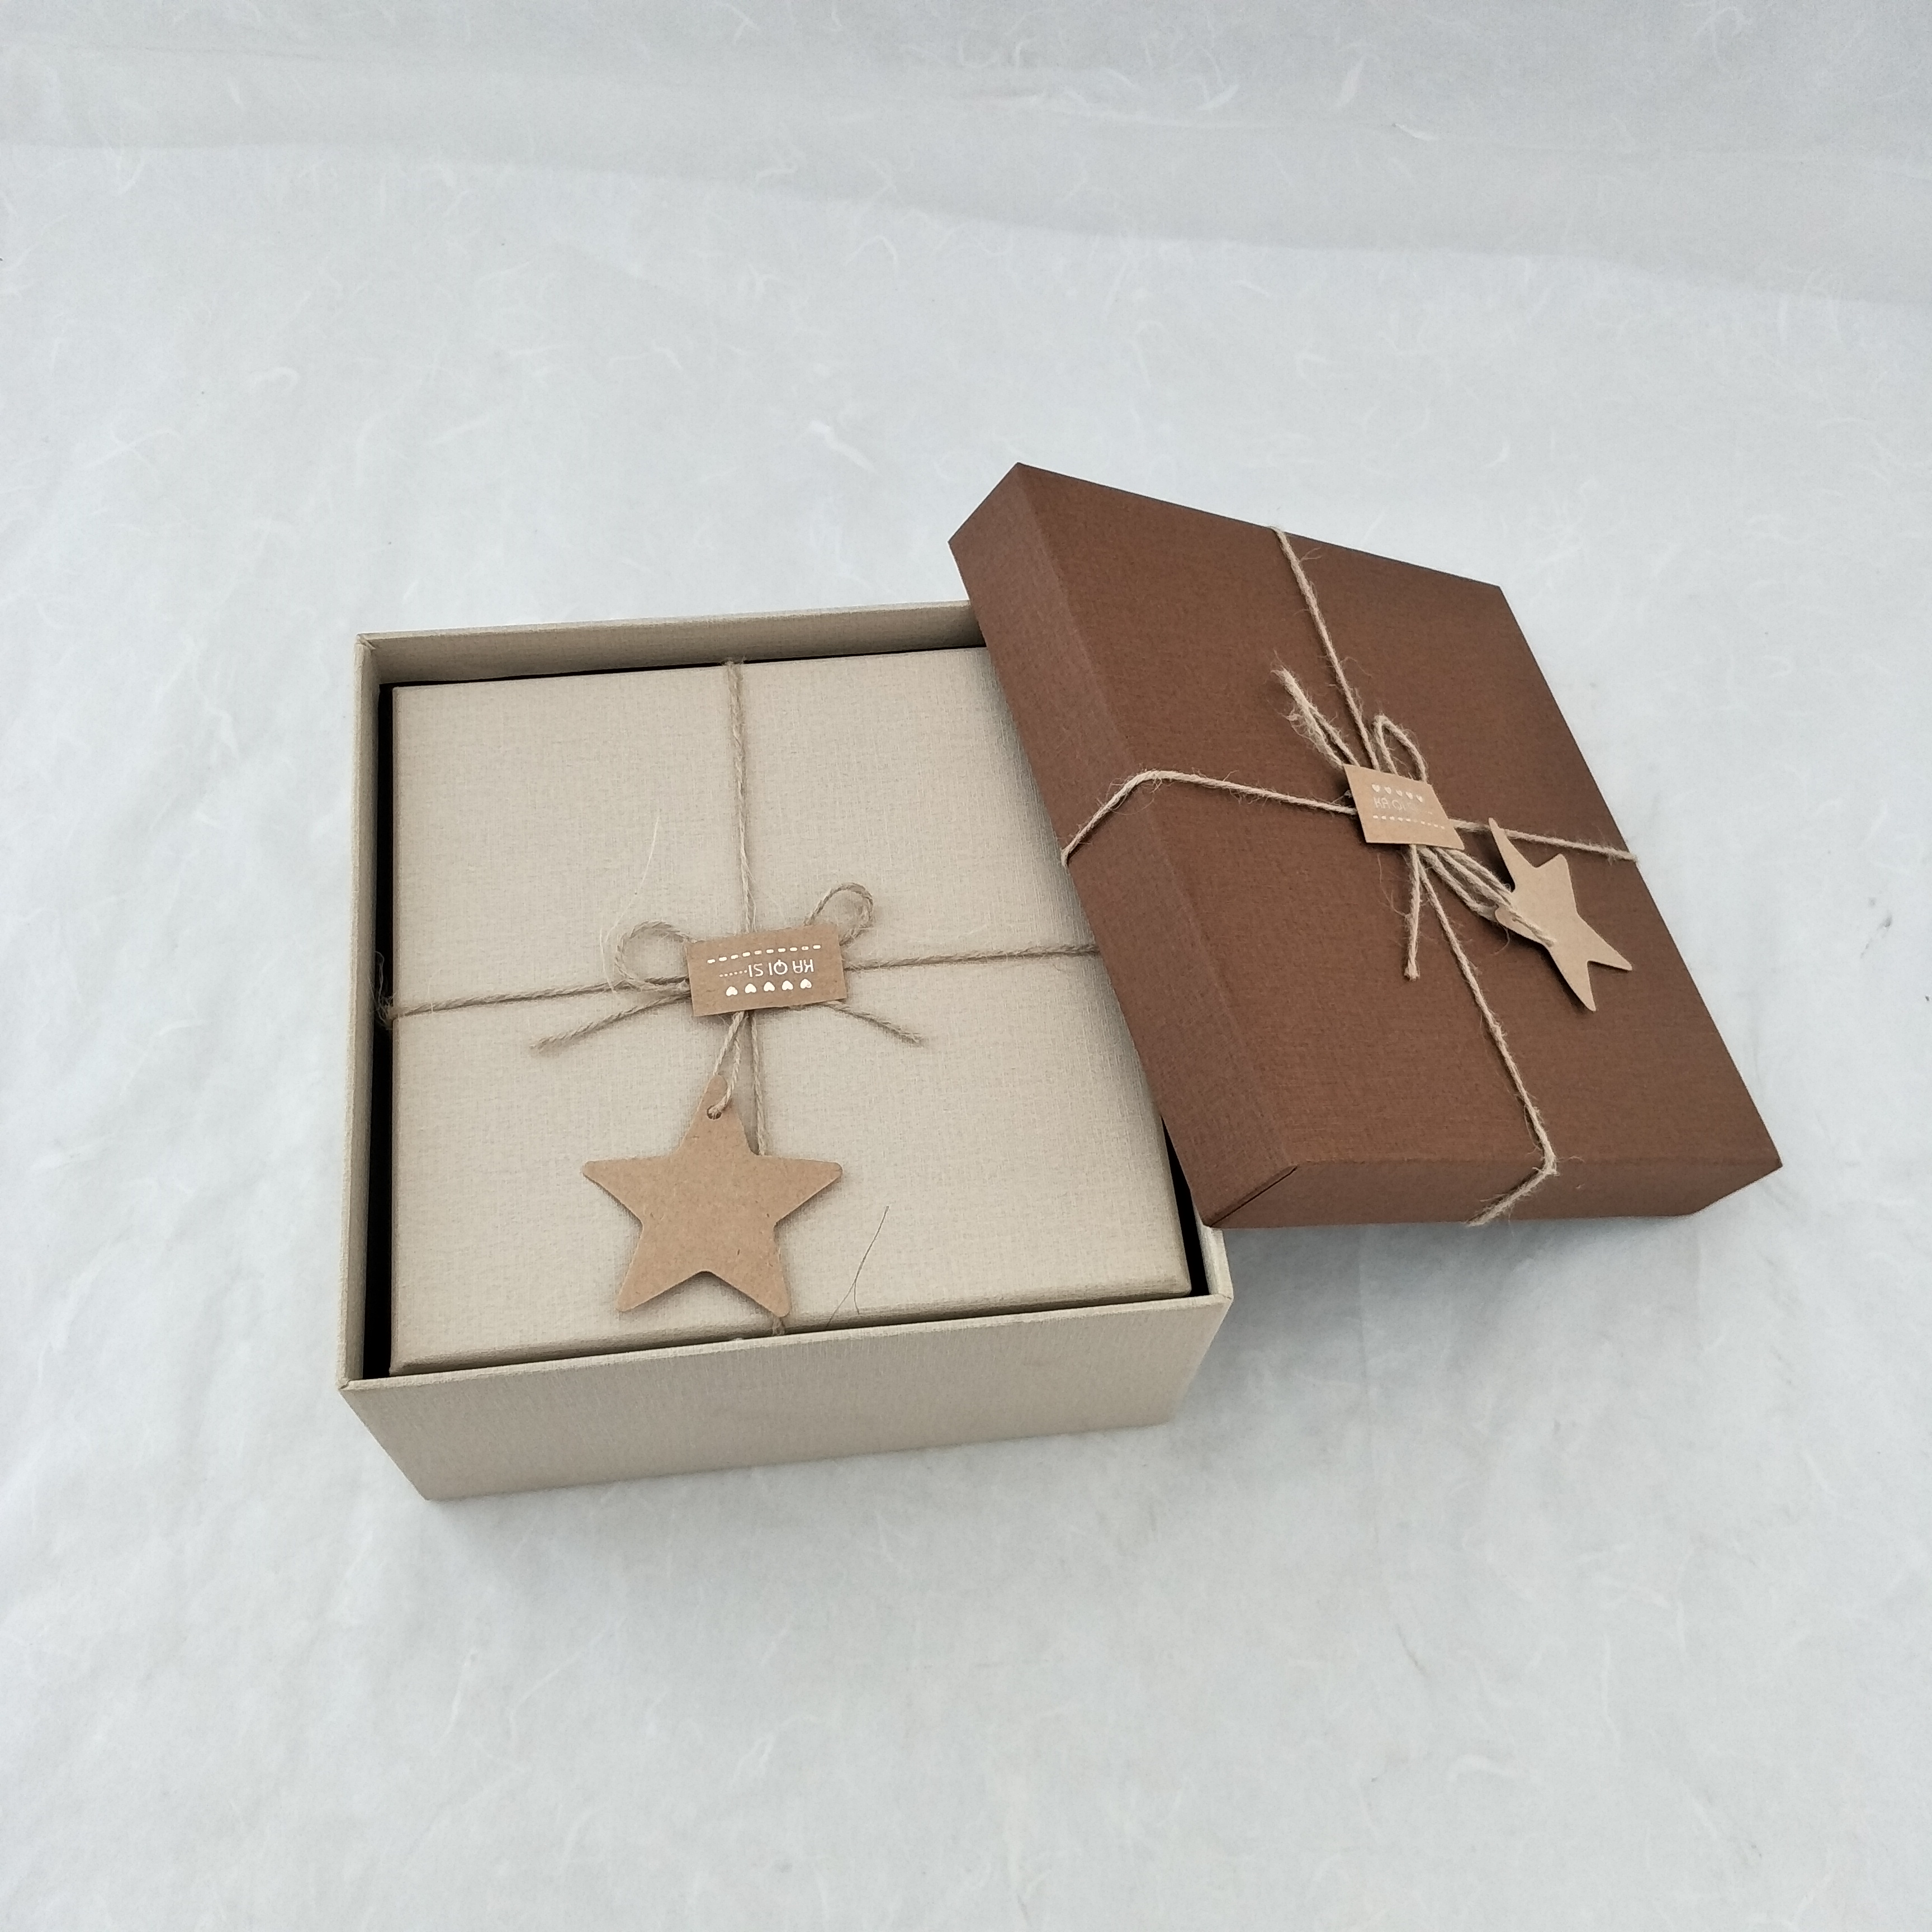 简约麻绳正方形情人节礼物包装盒 化妆品包装盒 生日礼物包装盒 首饰包装盒 手表包装盒